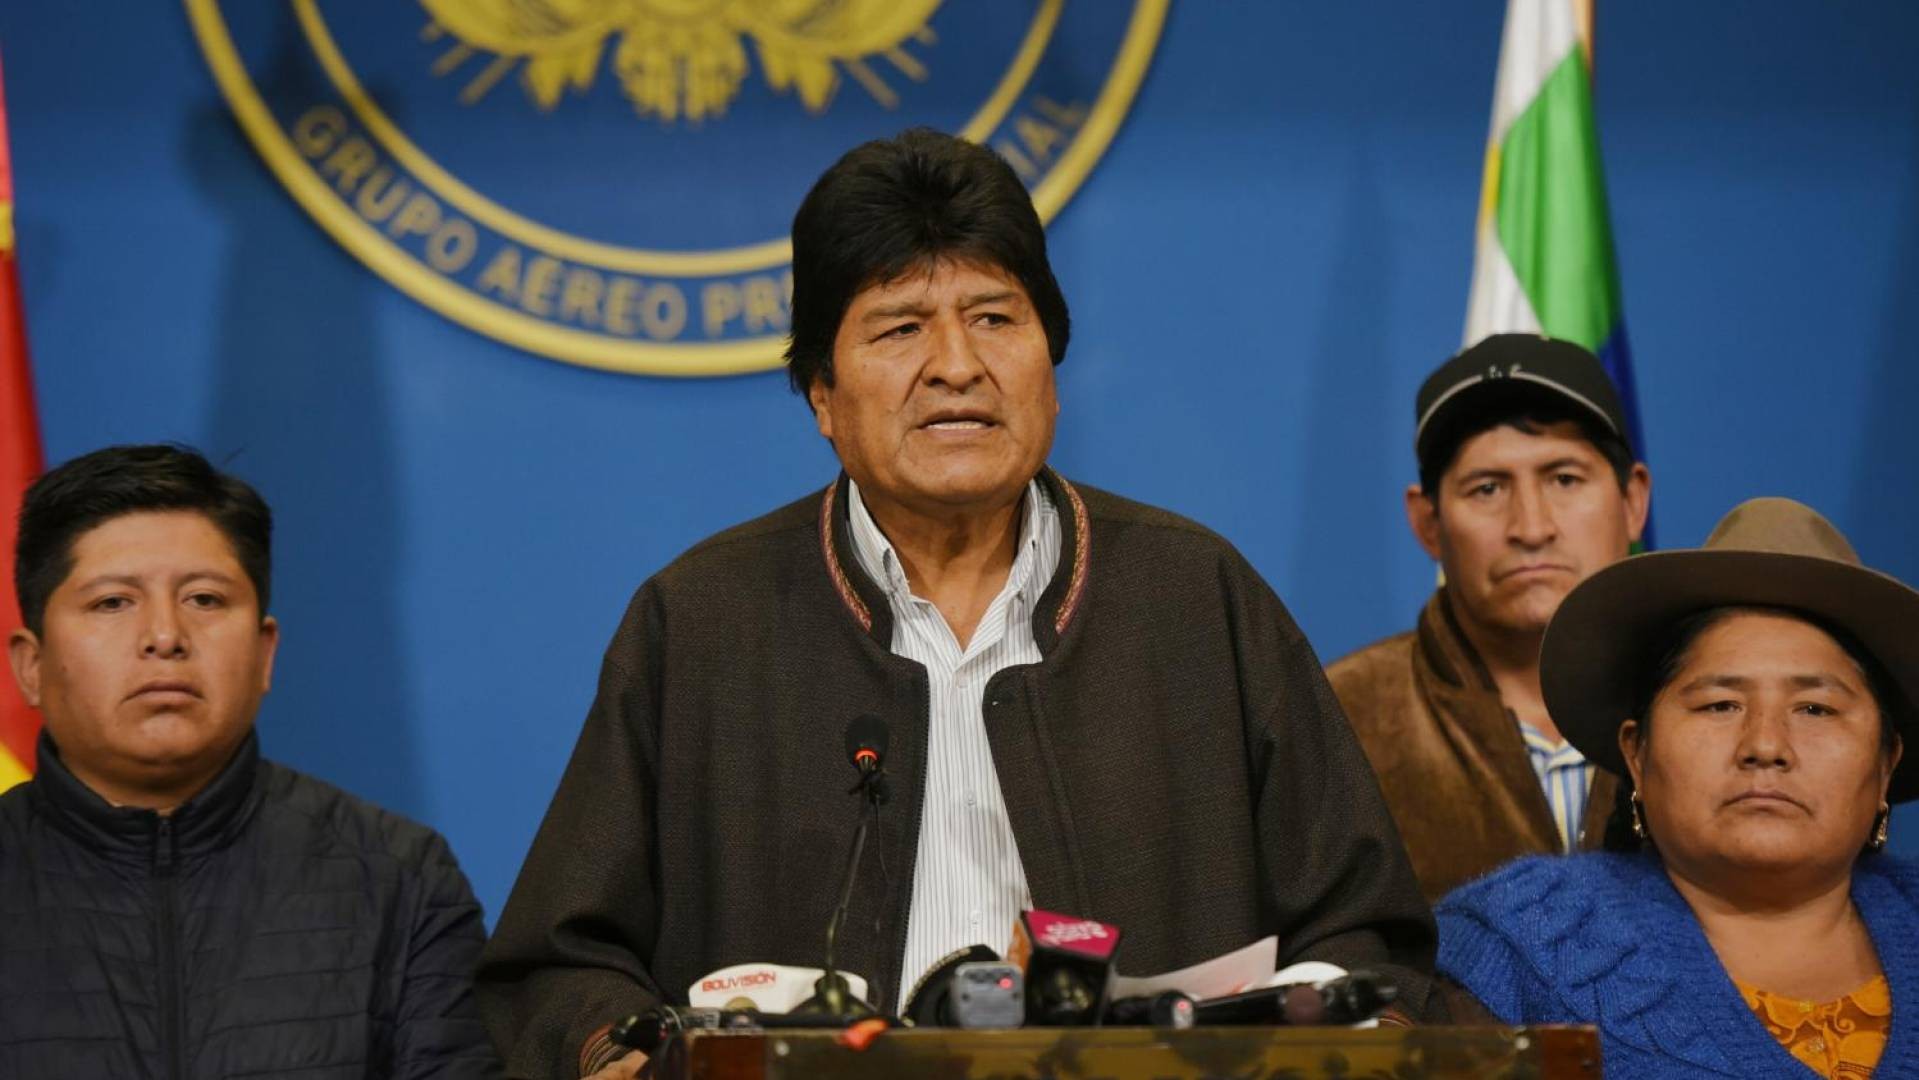 Il governo della Bolivia accusa l'ex presidente Evo Morales: "Vuole generare uno scenario di crisi strutturale"